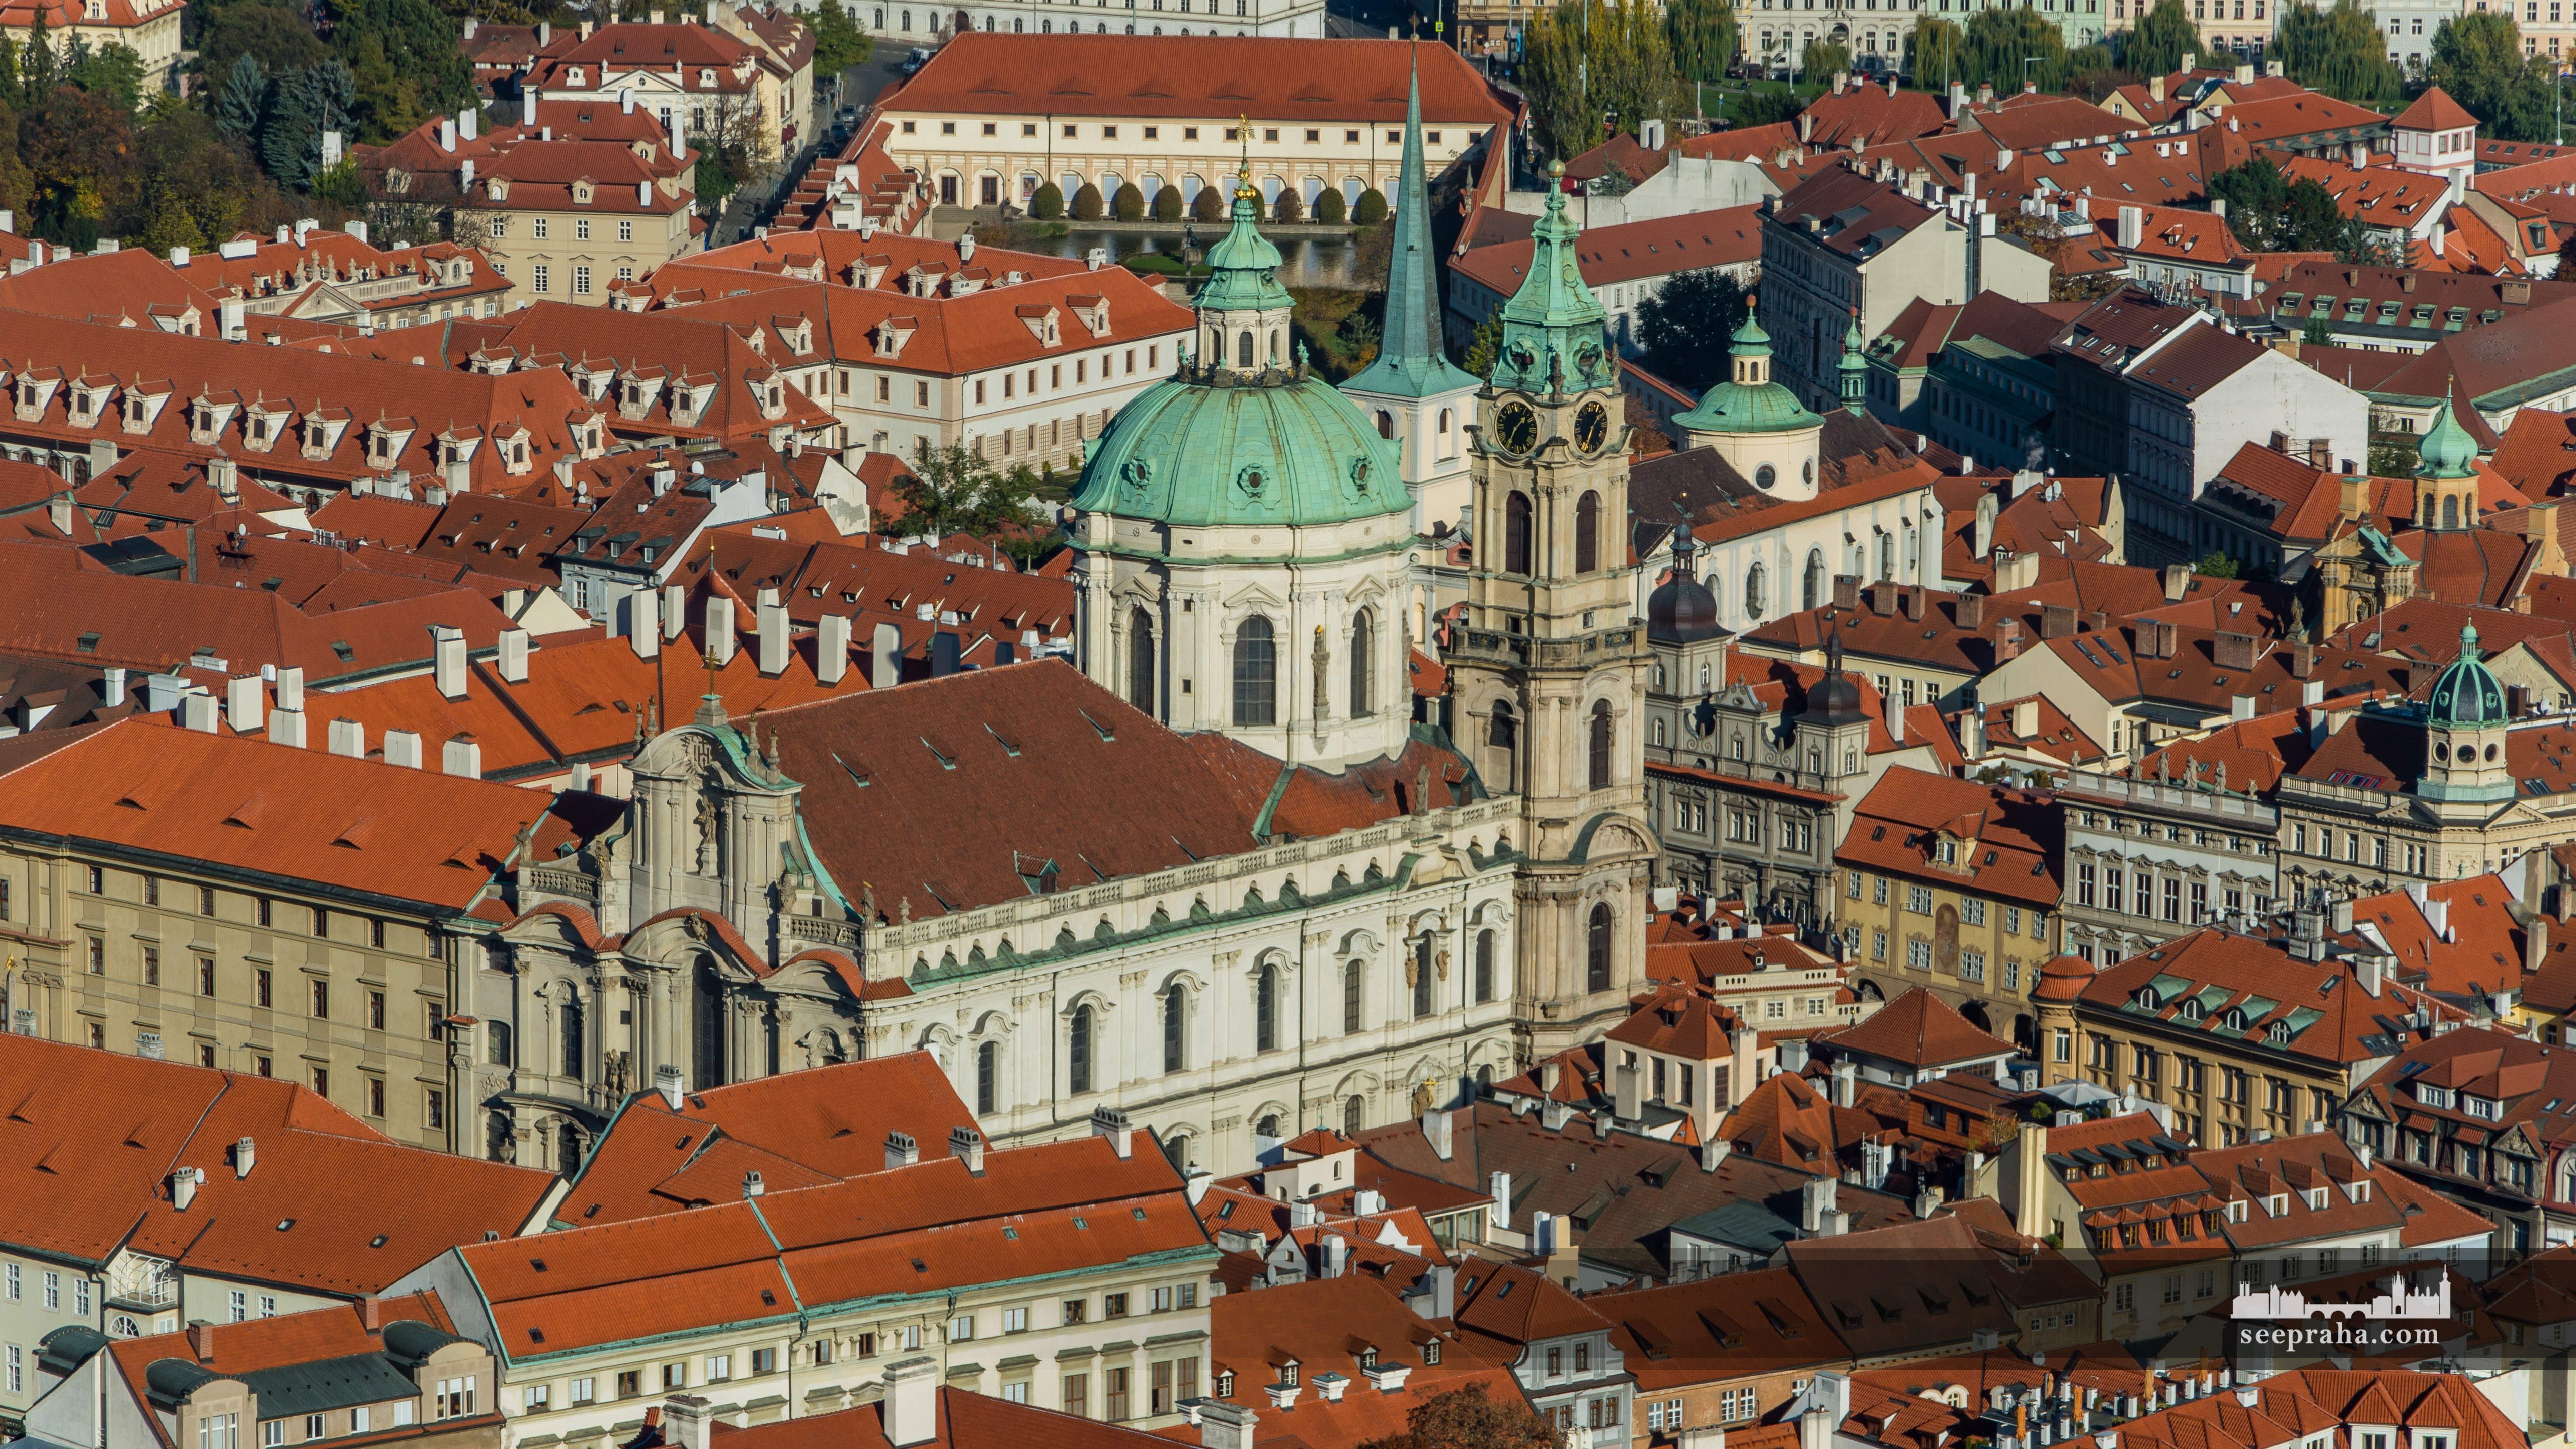 View of St. Nicholas Church taken from Petřín Tower, Prague, Czech Republic